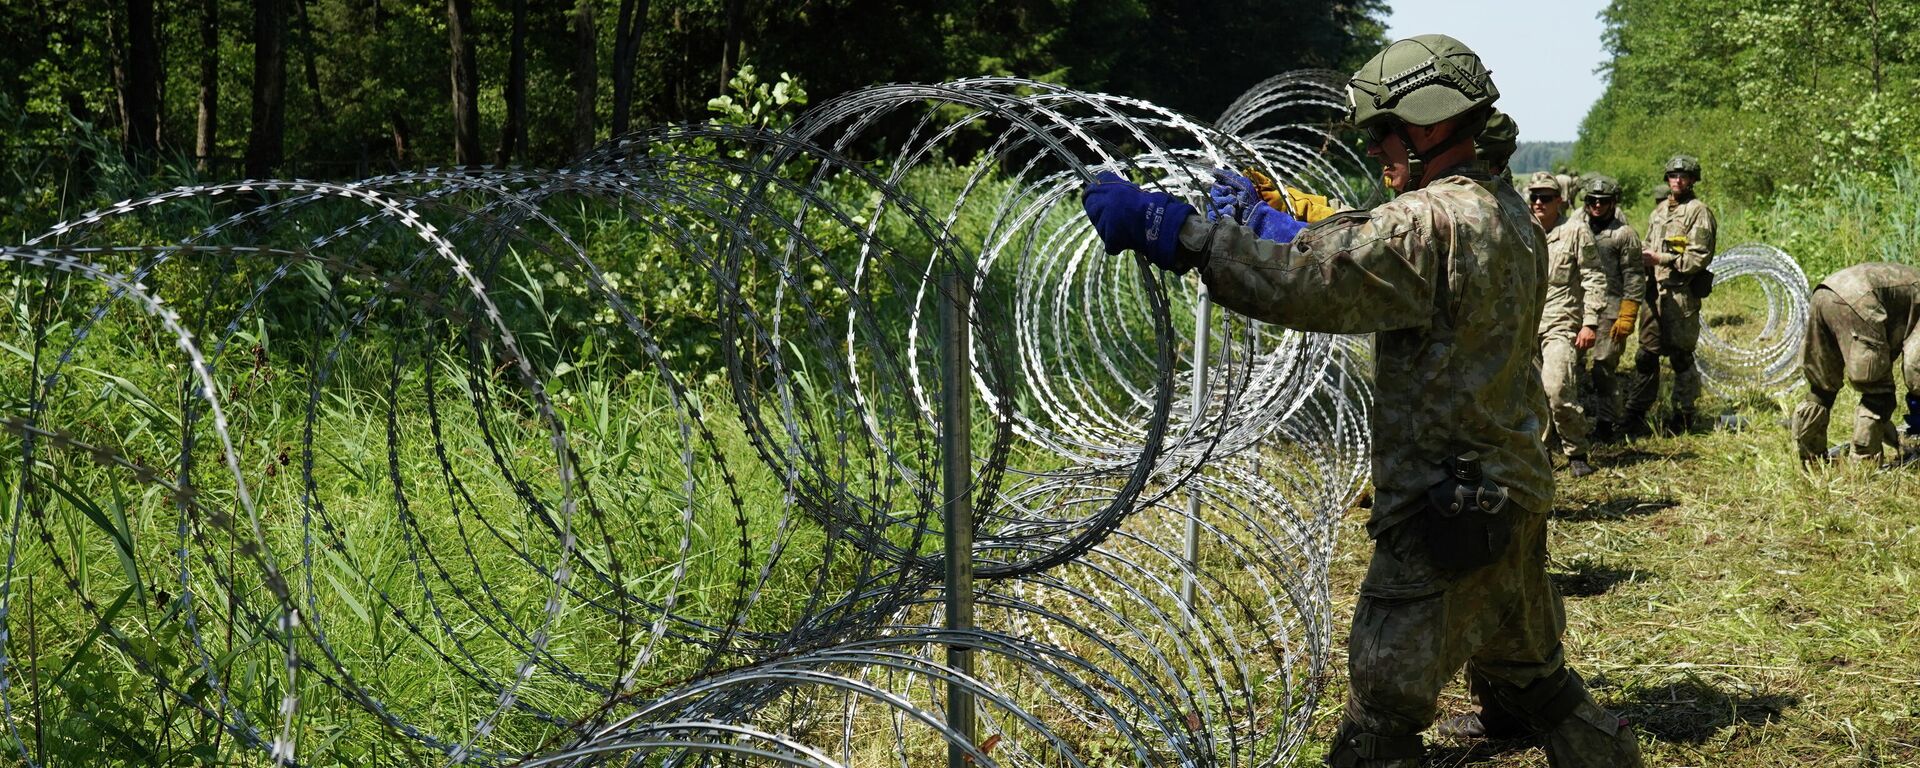 Солдаты литовской армии устанавливают забор из колючей проволоки на границе с Беларусью в городе Друскининкай - Sputnik Узбекистан, 1920, 14.07.2021